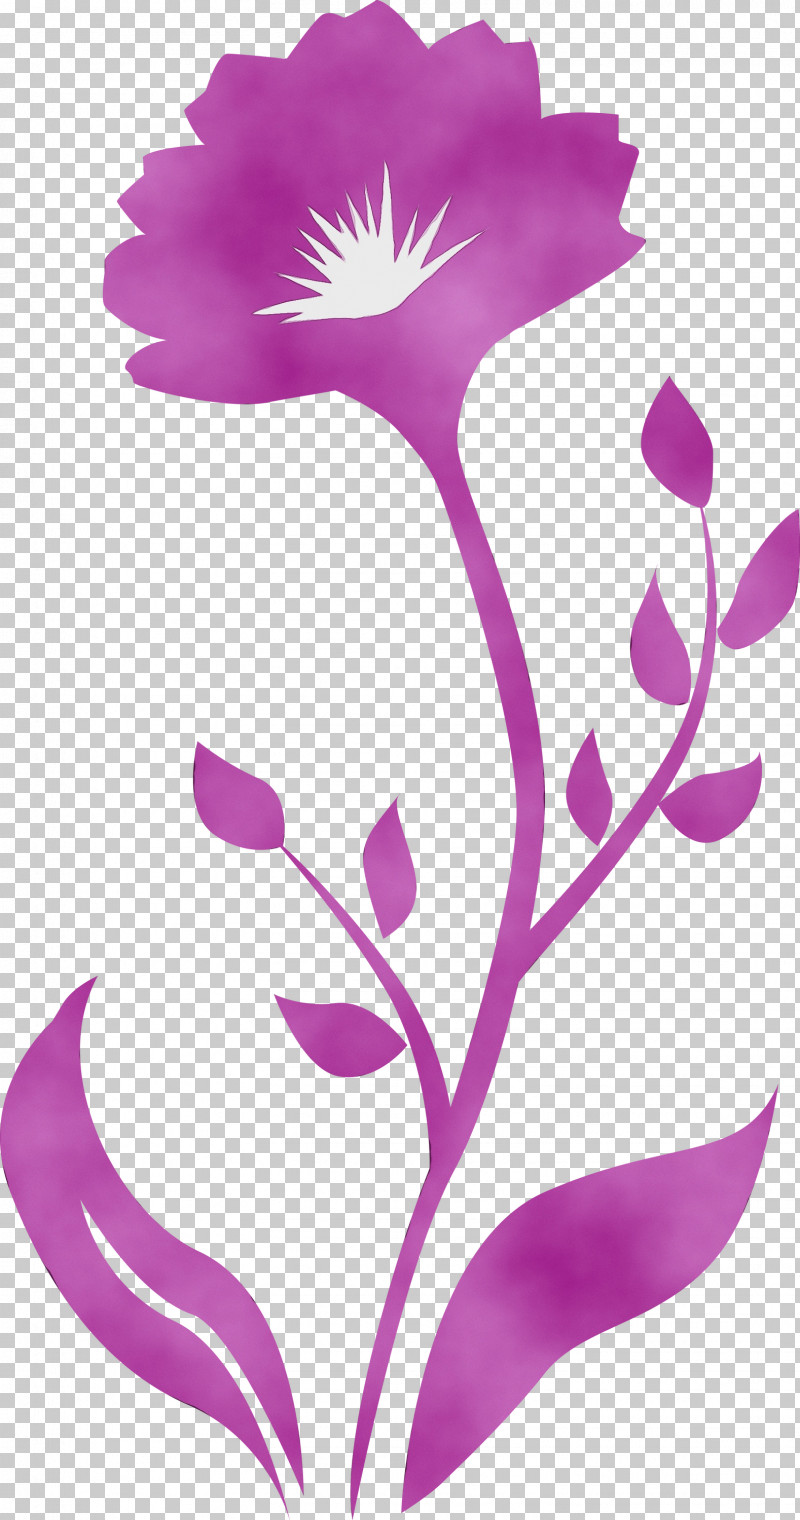 Violet Pedicel Purple Flower Pink PNG, Clipart, Decor Frame, Flower, Magenta, Paint, Pedicel Free PNG Download